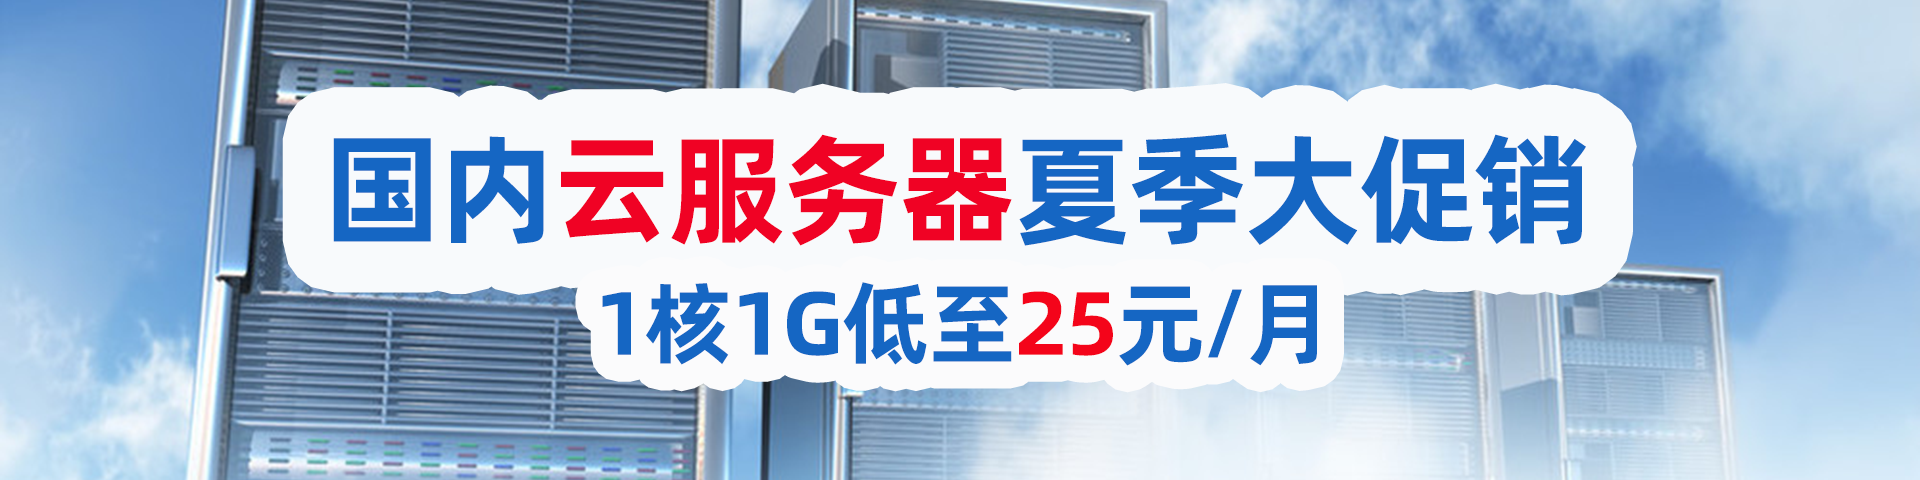 老薛主机国内云服务器夏季大促销，1核1G低至25元/月